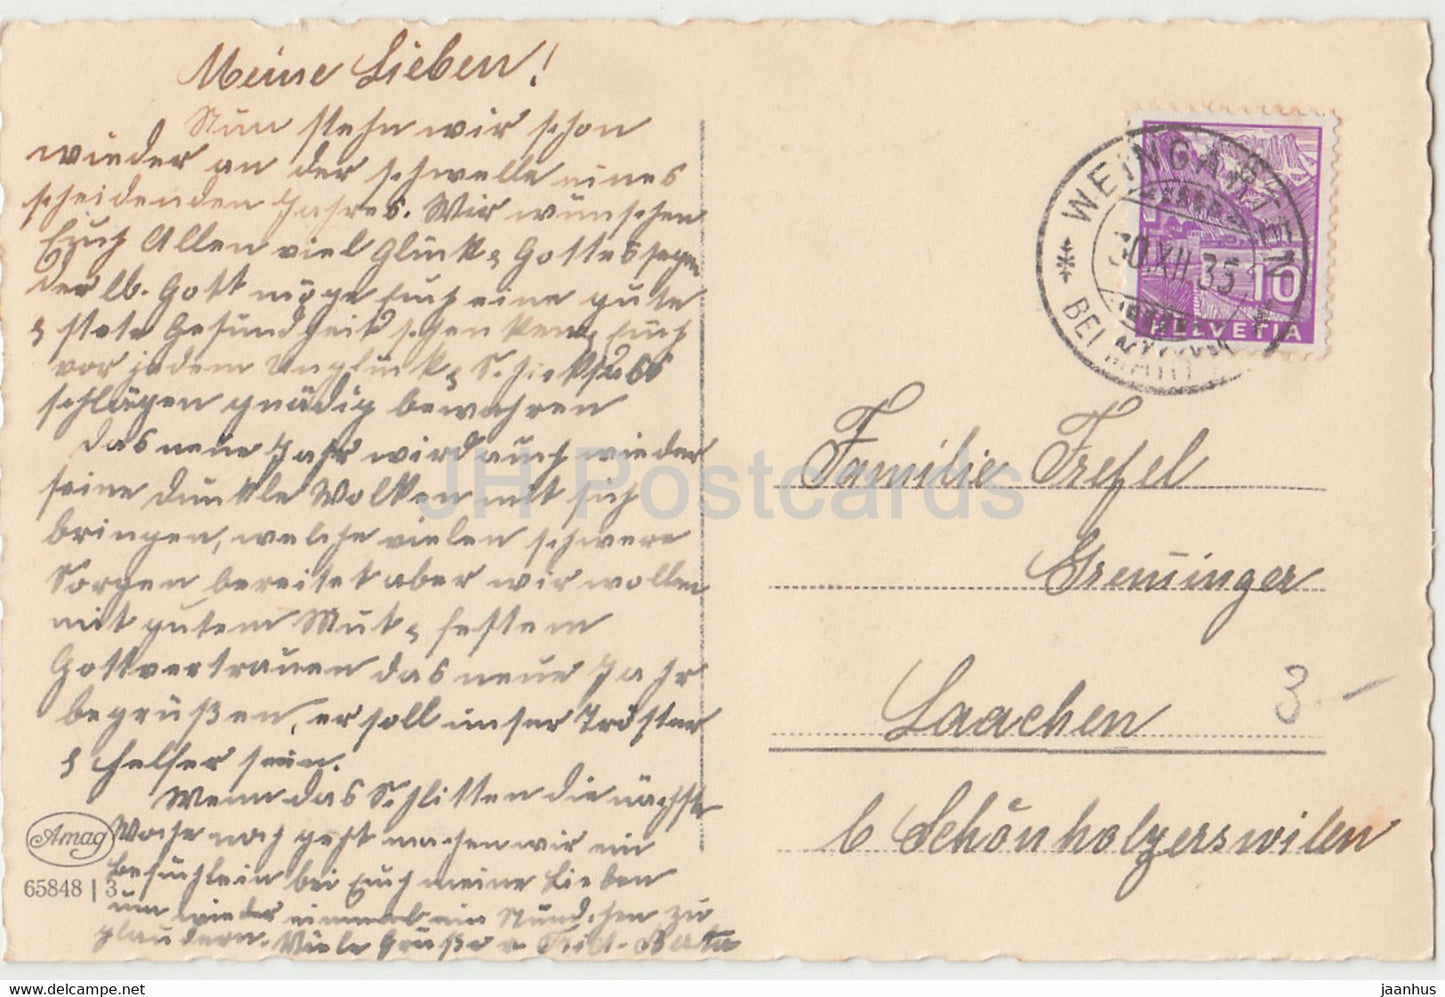 Neujahrsgrußkarte - Herzlichen Glückwunsch zum Neuen Jahre - Hirsch - Amag 65848 alte Postkarte - 1935 - Deutschland - gebraucht